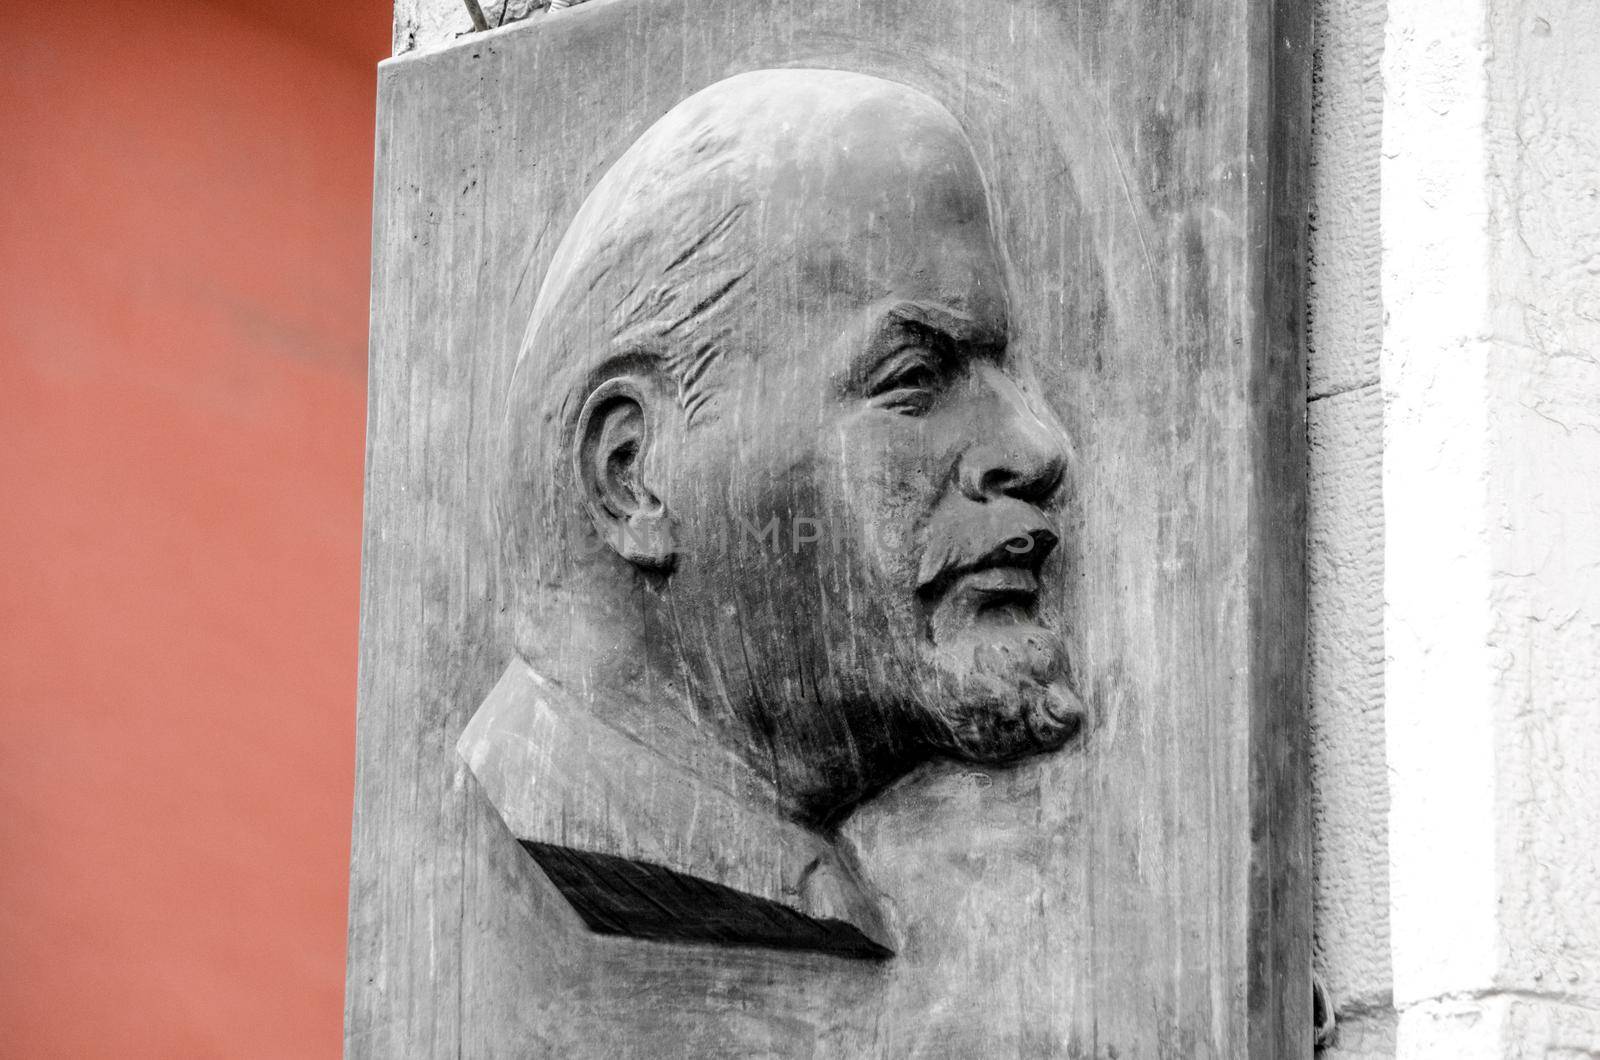 Portrait of Lenin on stone wall